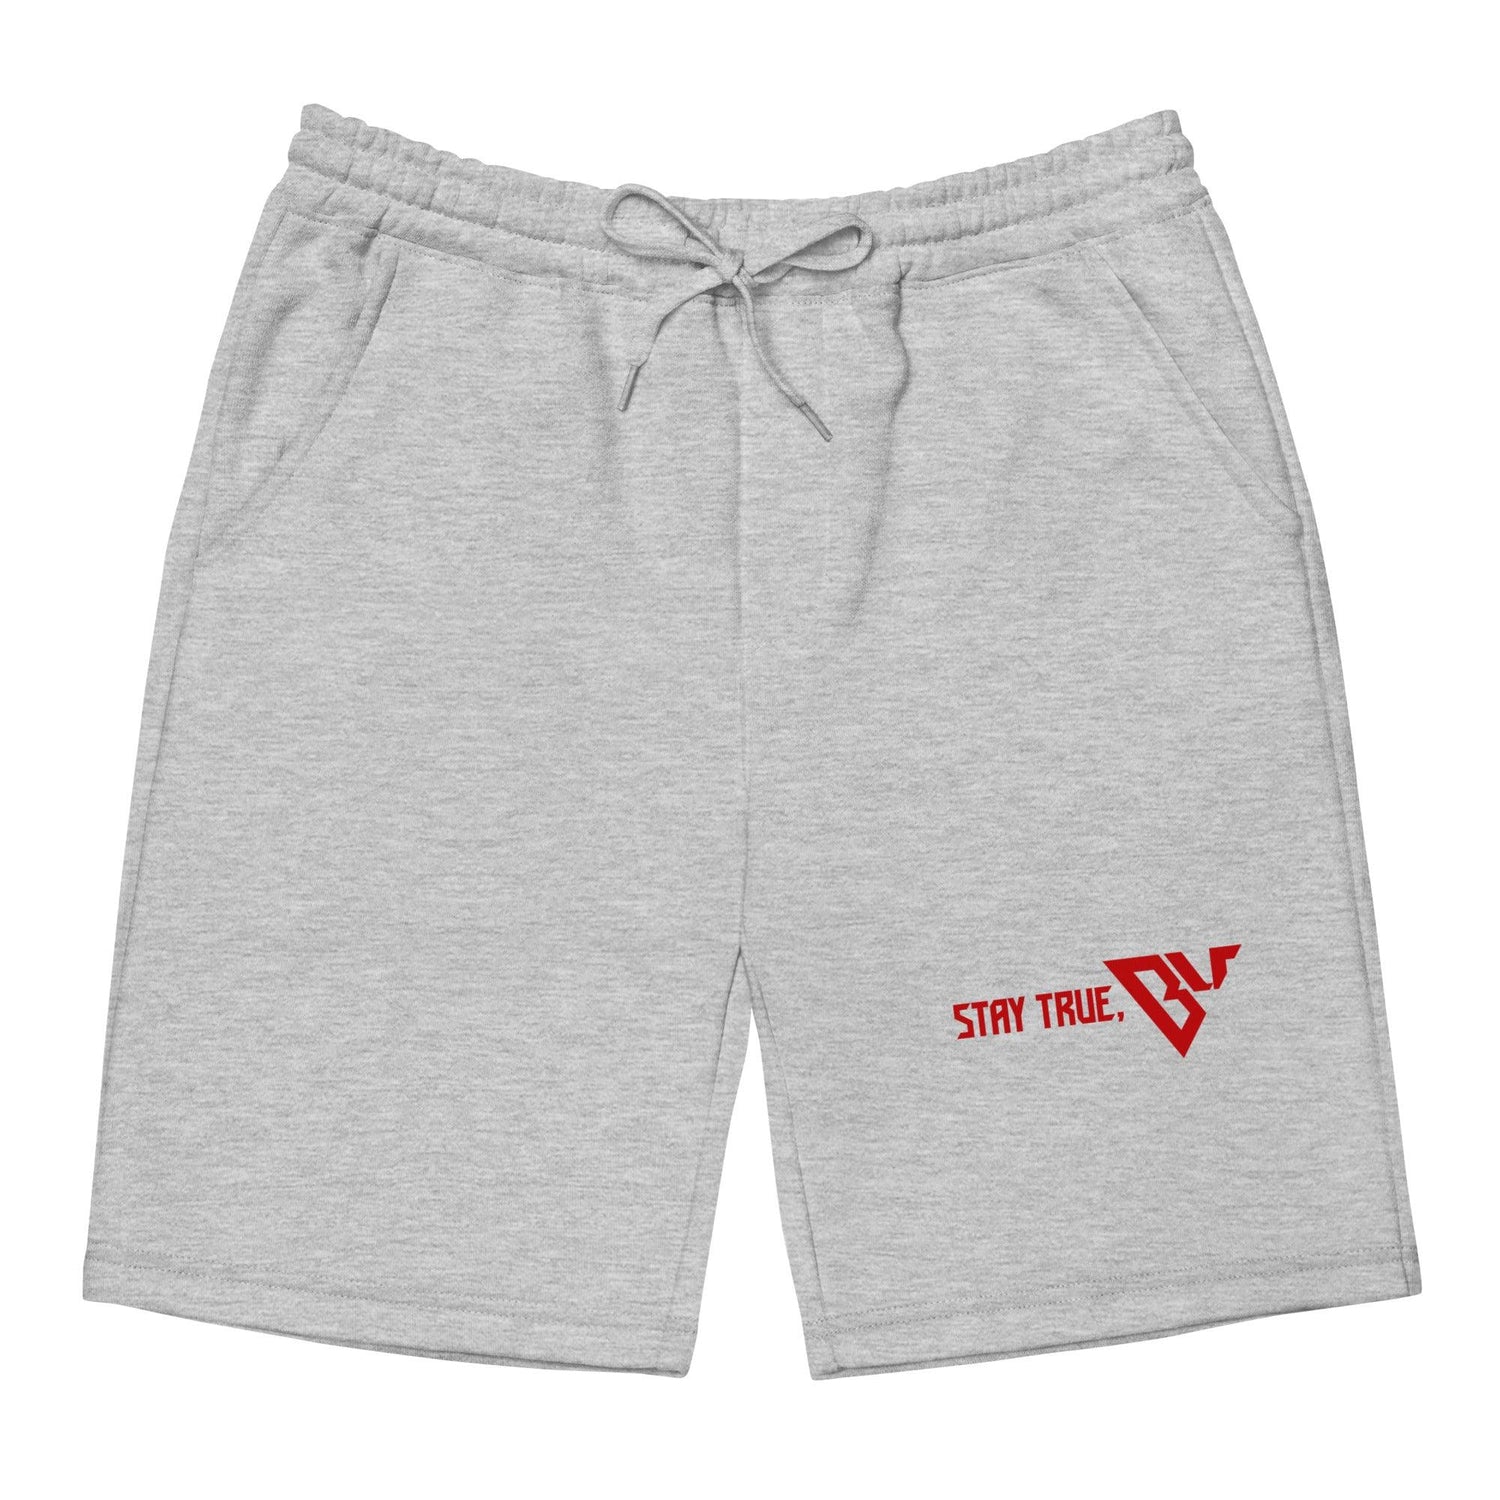 Ben Uzoh "Stay True" fleece shorts - Fan Arch